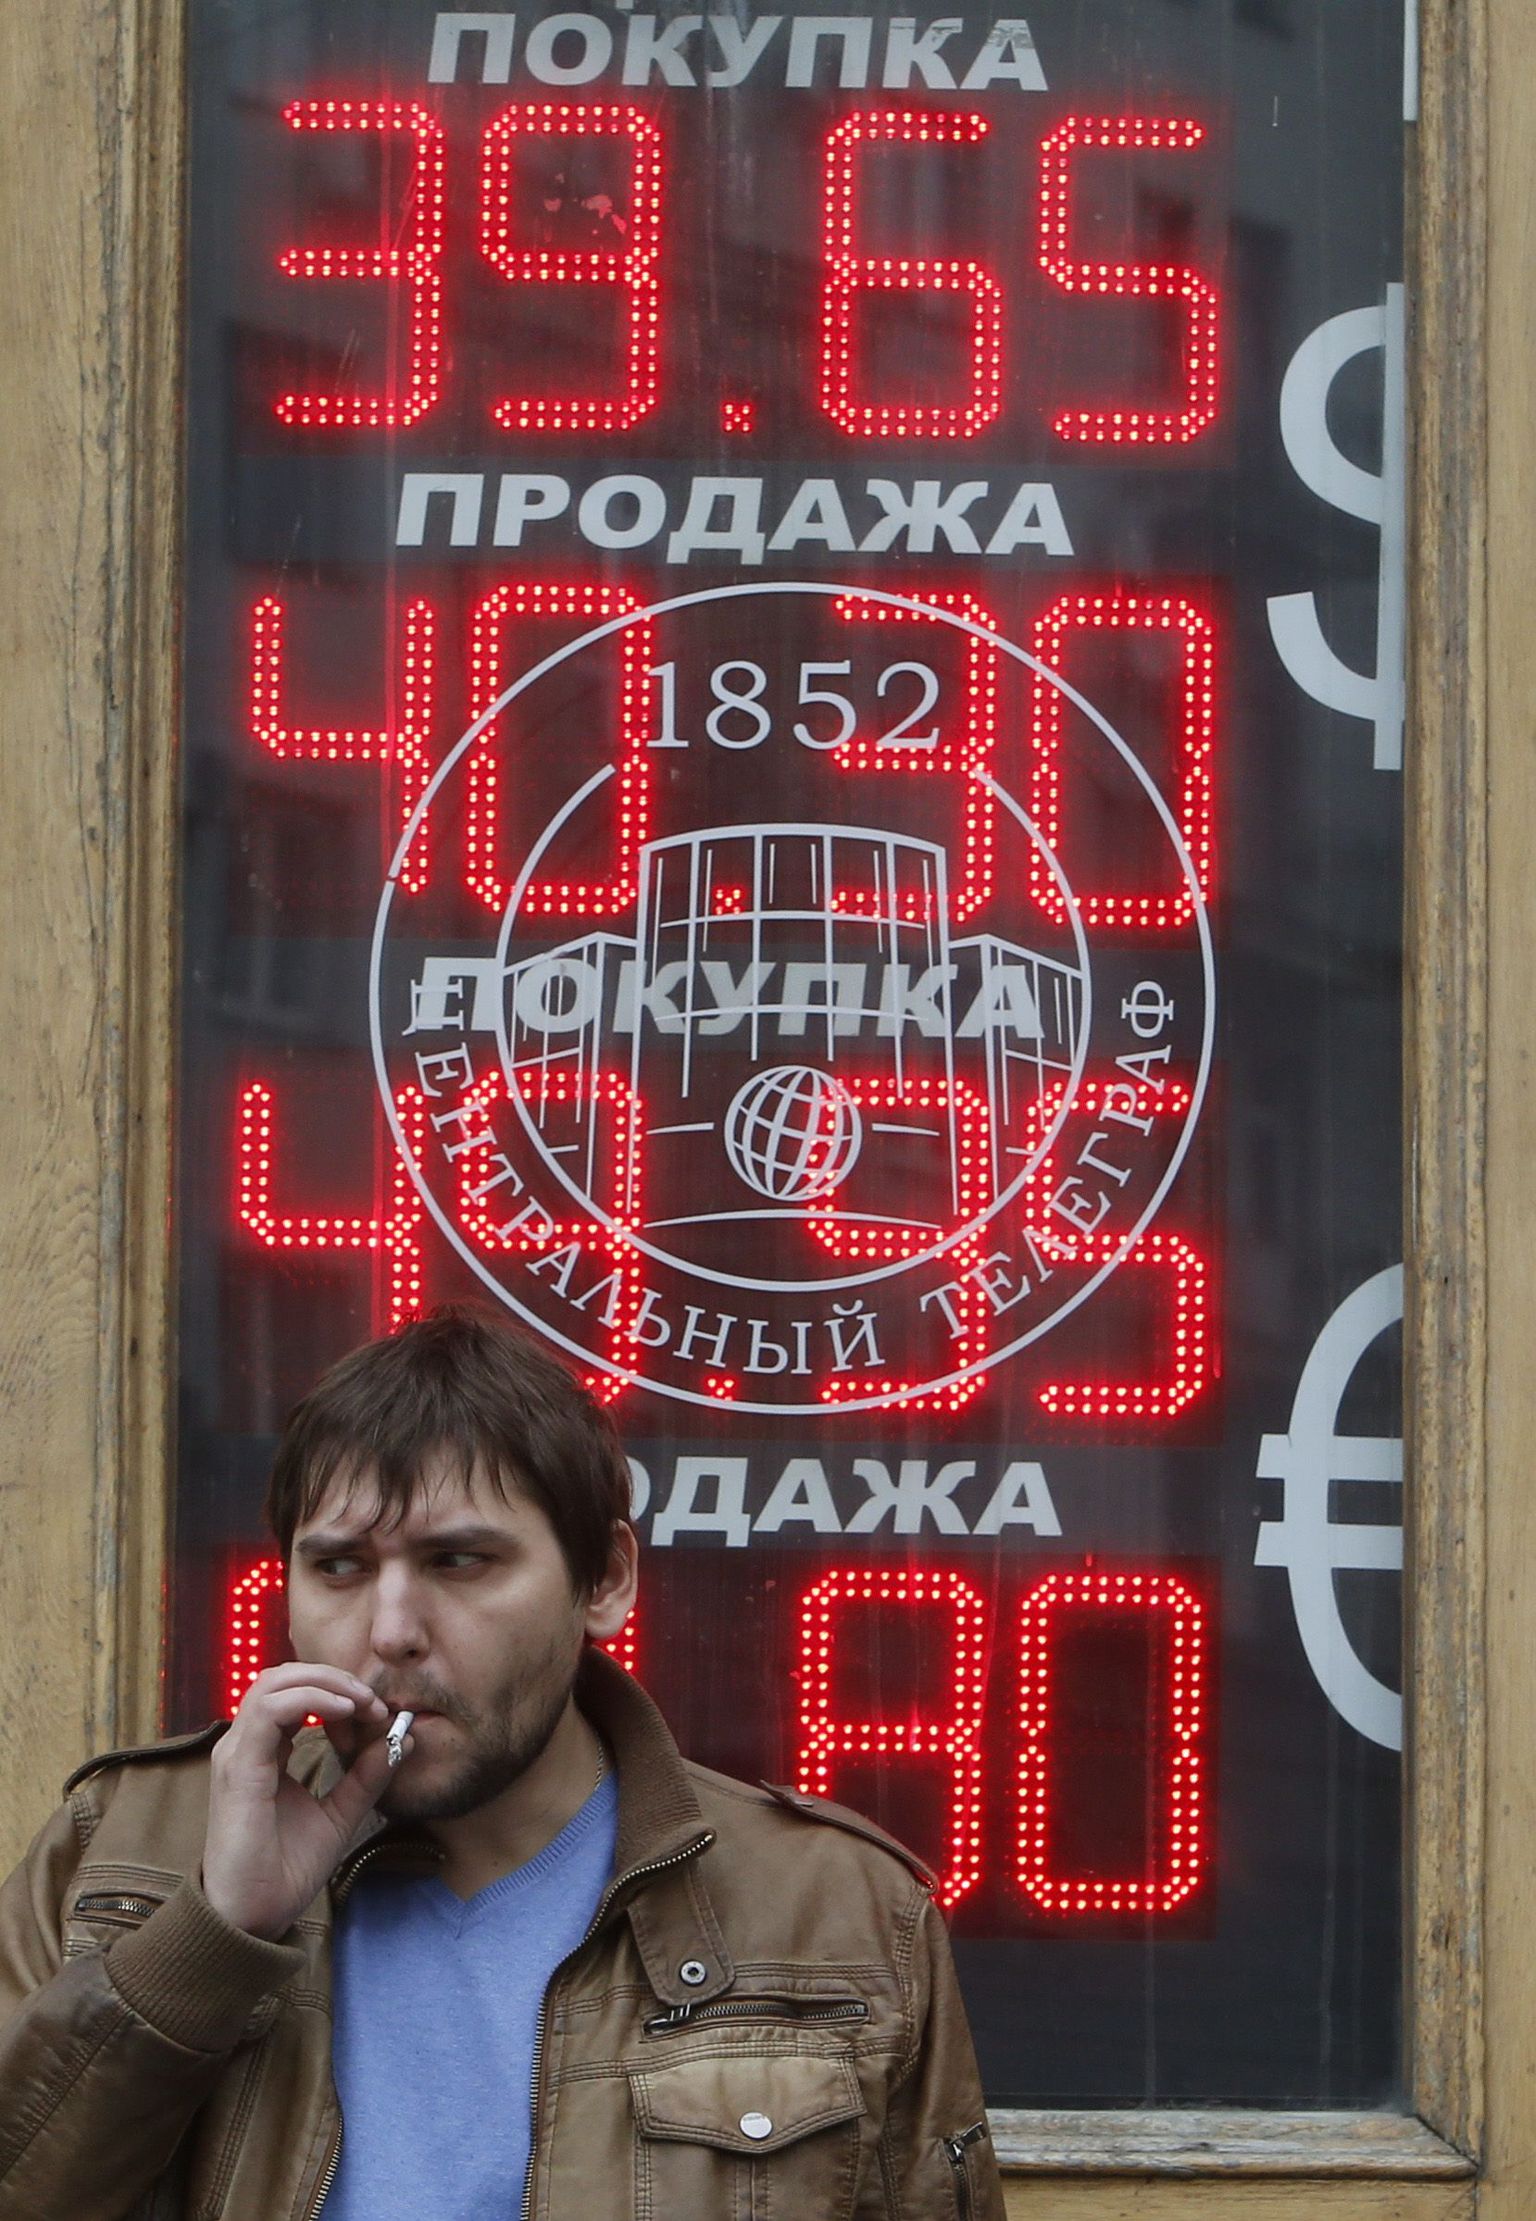 Valuutavahetus Moskvas.